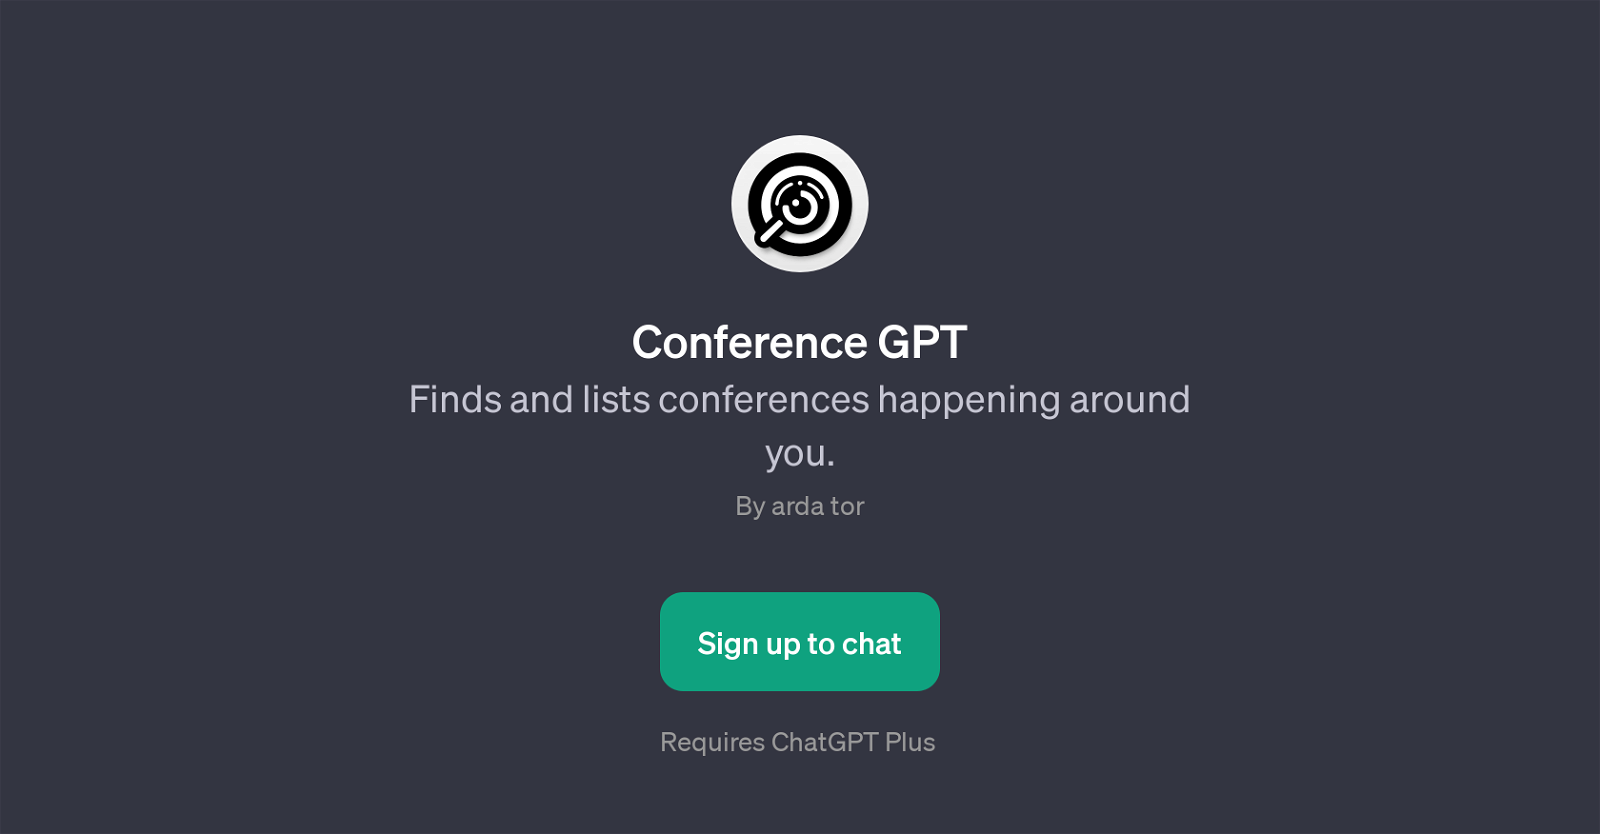 Conference GPT website